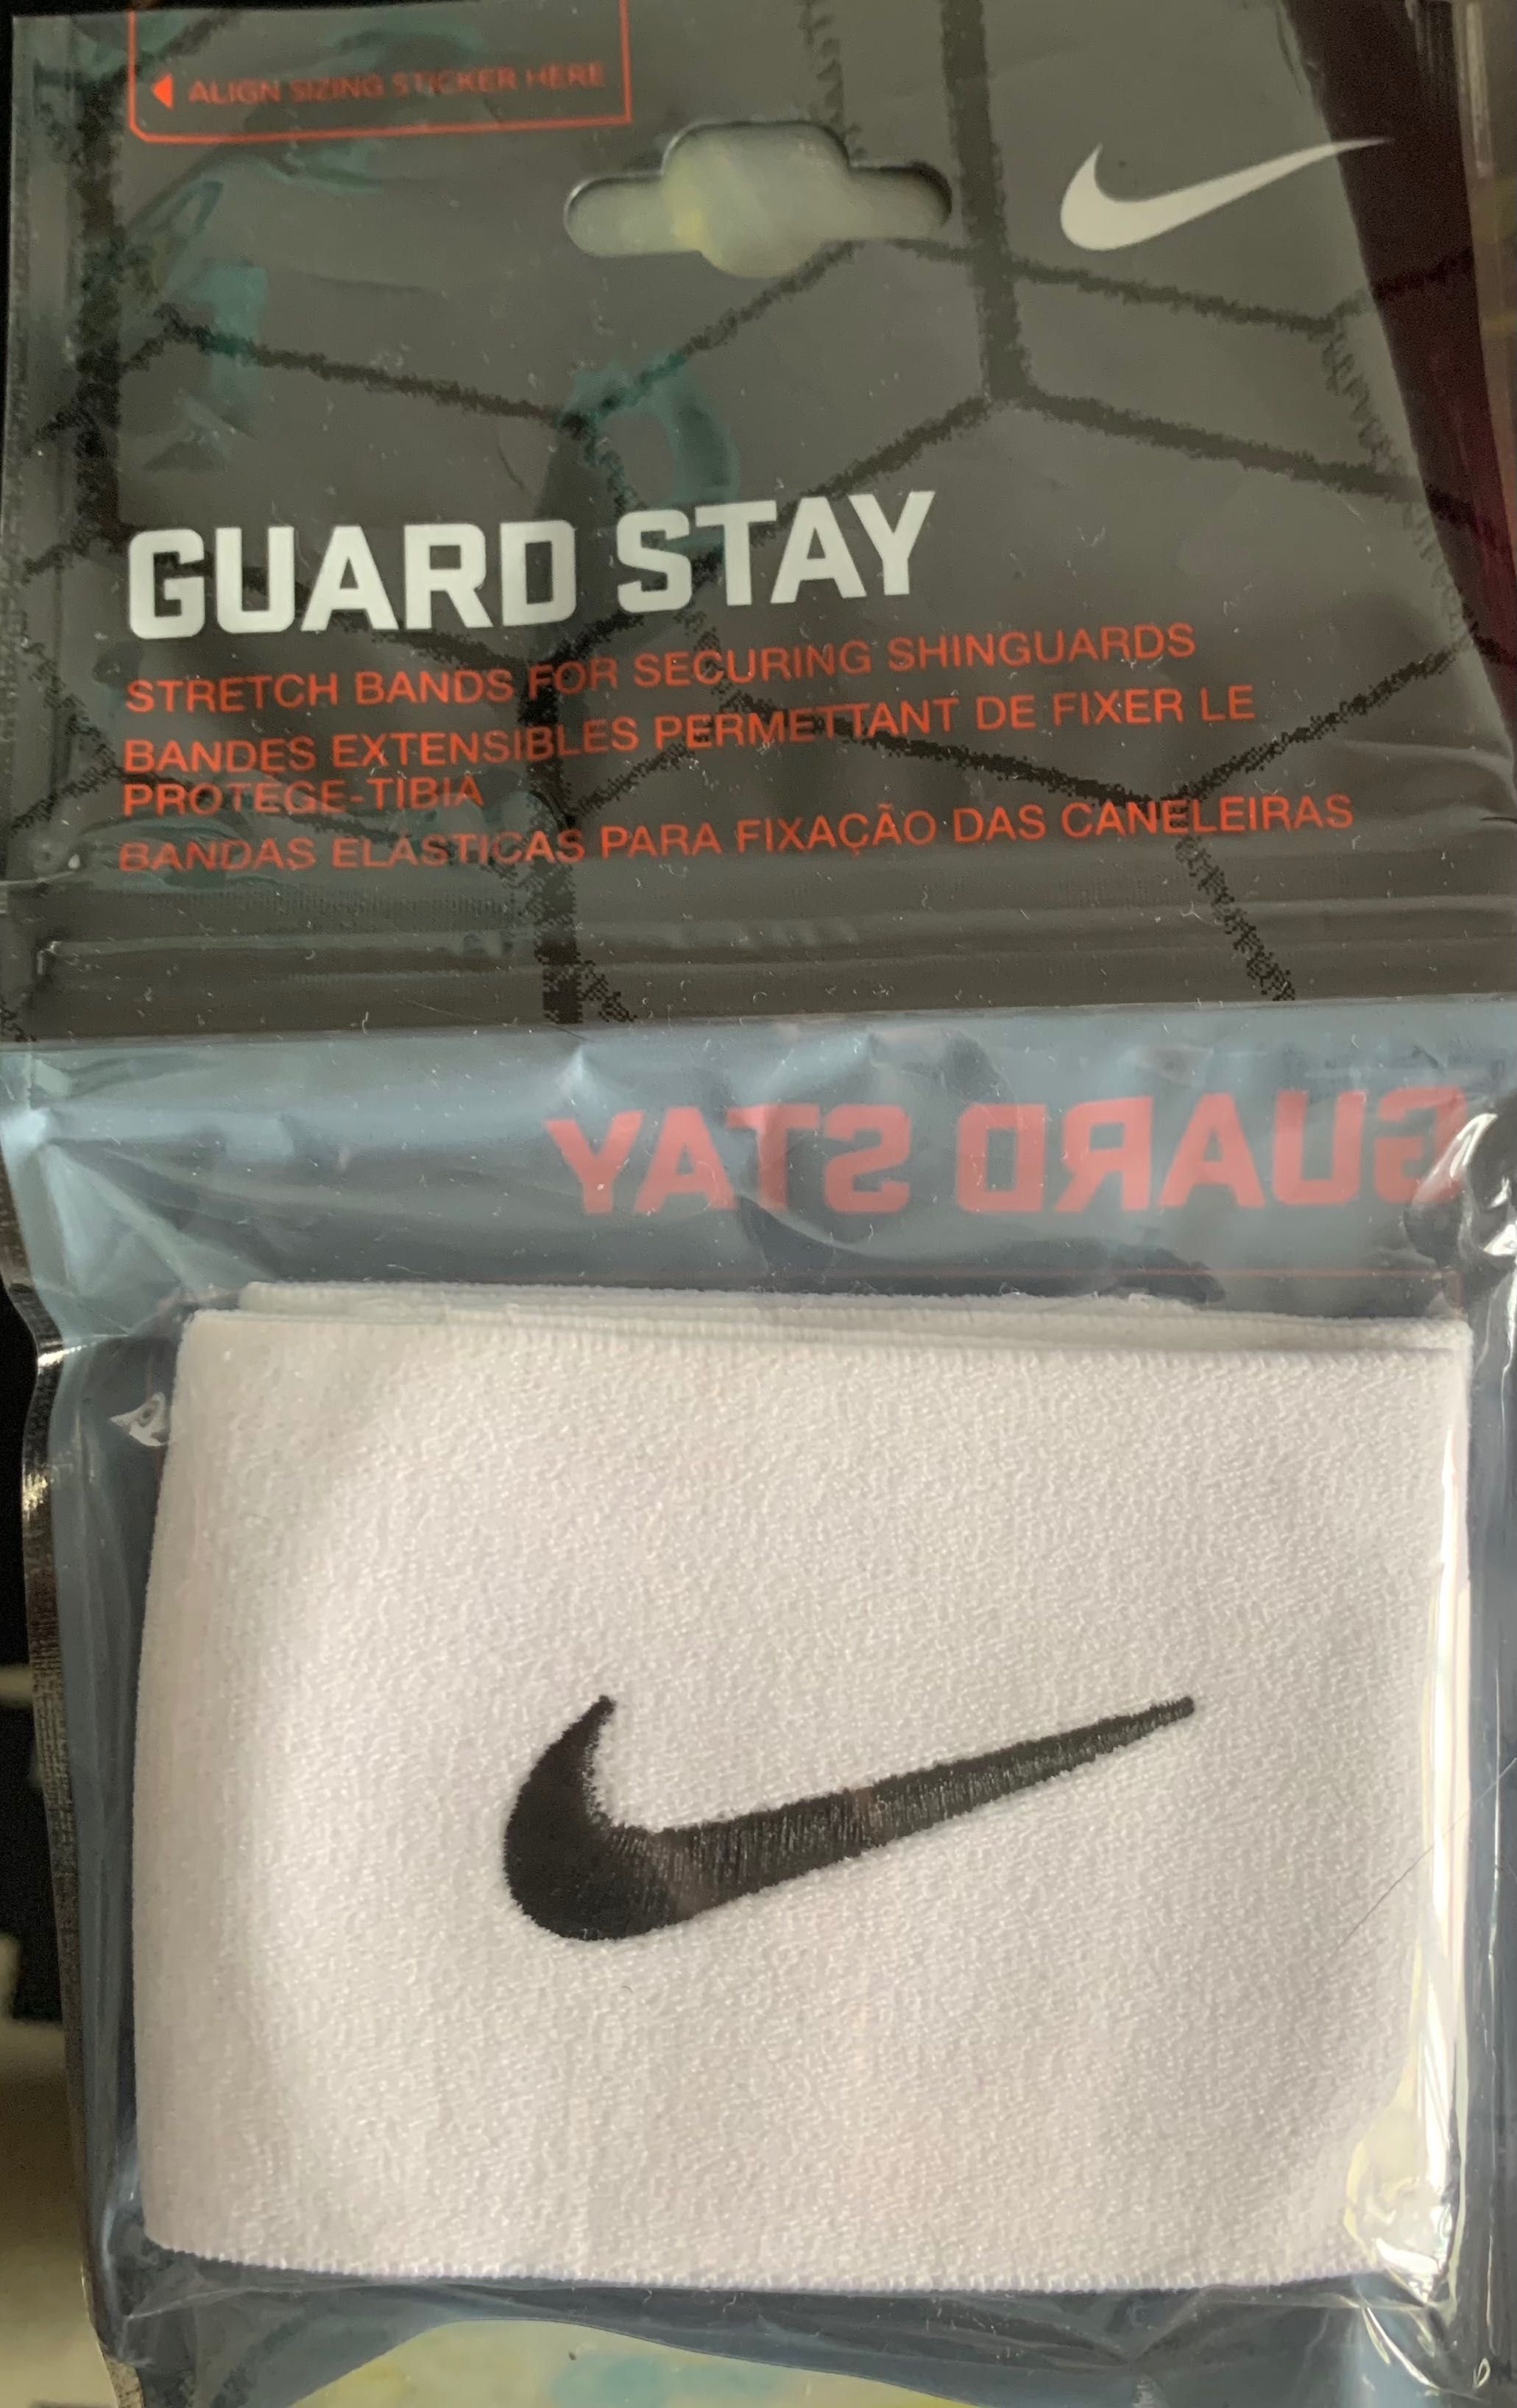 Guard Stay - Bandas elásticas para fixação das caneleiras